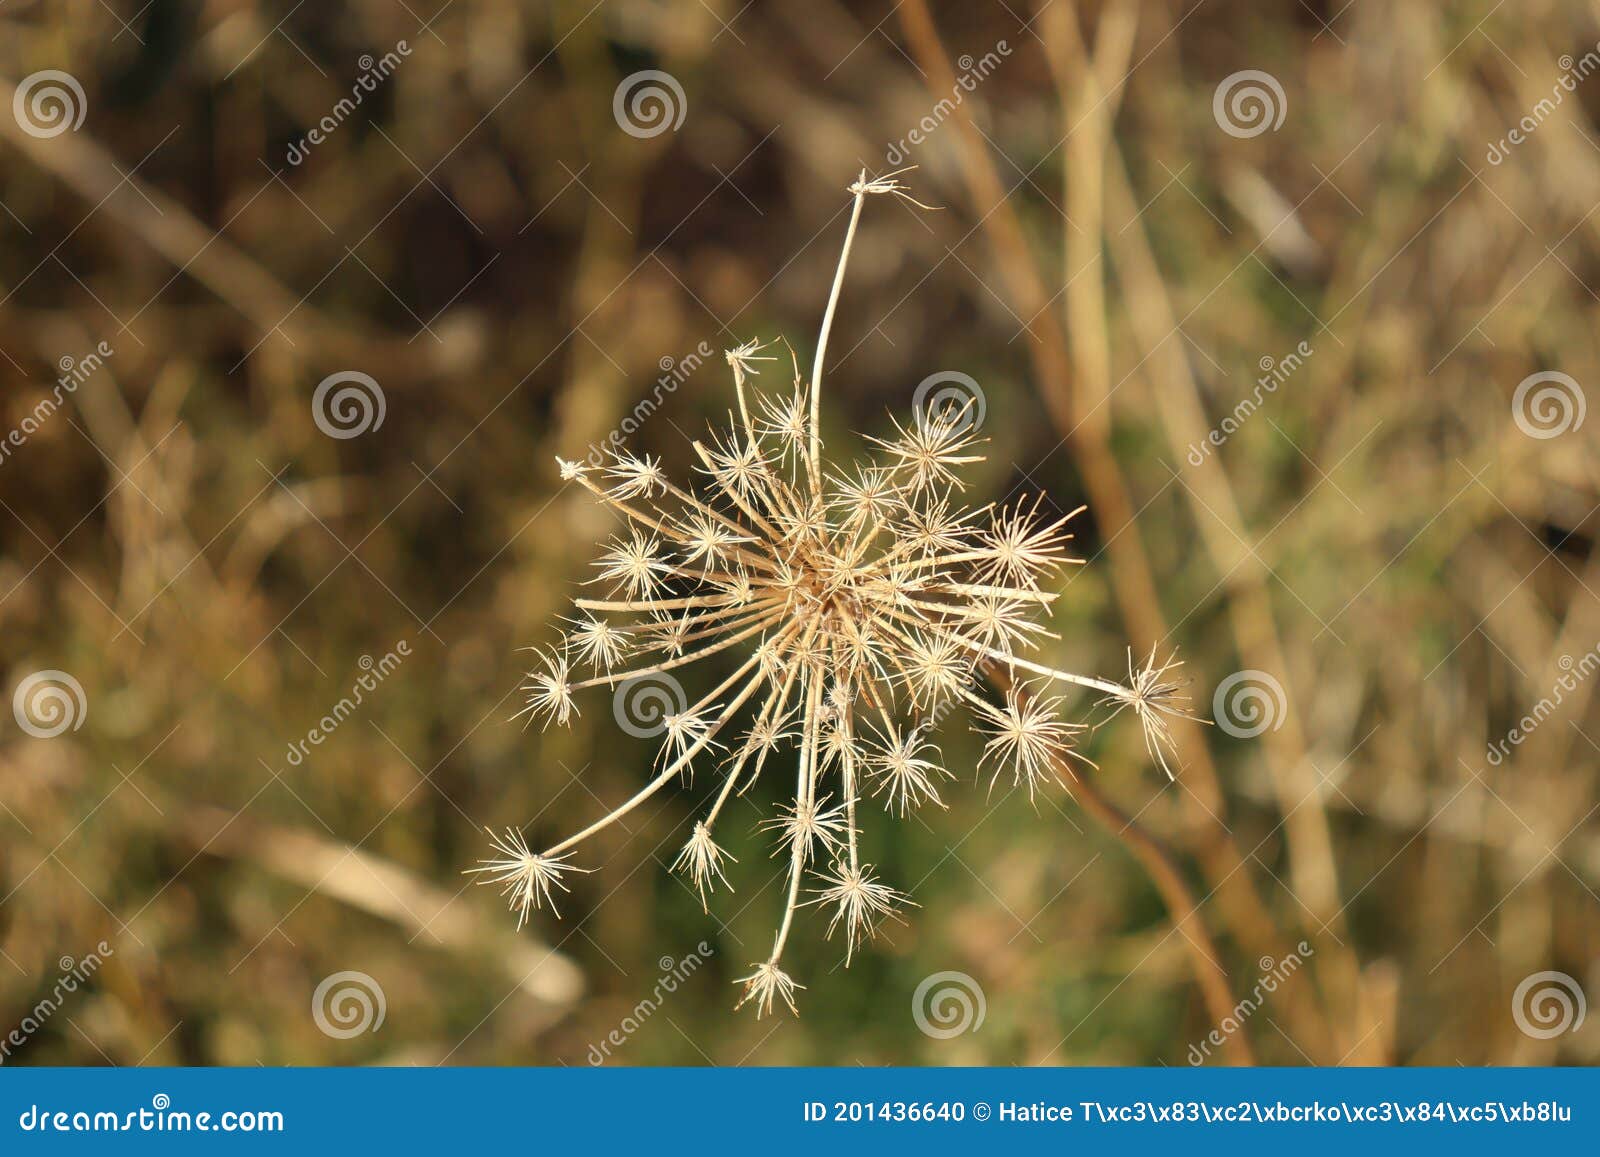 star-d prairie plant seed